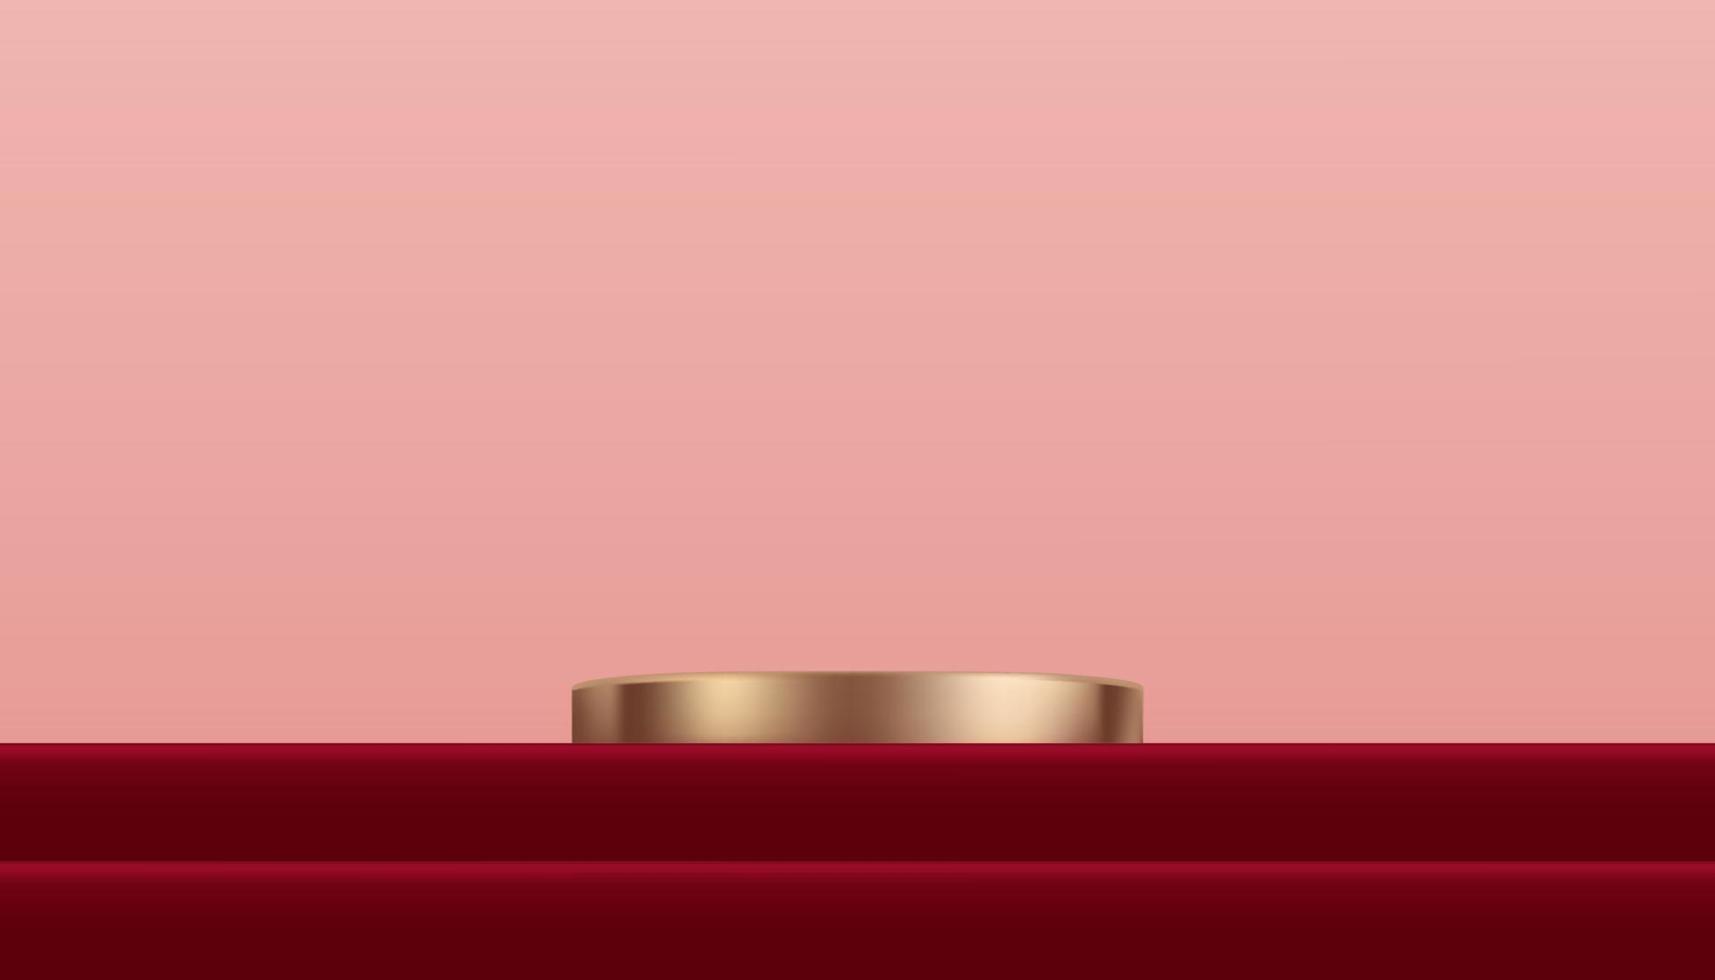 Pódio de cilindro de ouro rosa de exibição 3D no degrau vermelho e fundo de parede bege, cena de estúdio de luxo vetorial com carrinho de círculo para dia dos namorados, ano novo chinês, natal, dia das mães apresentação do produto vetor